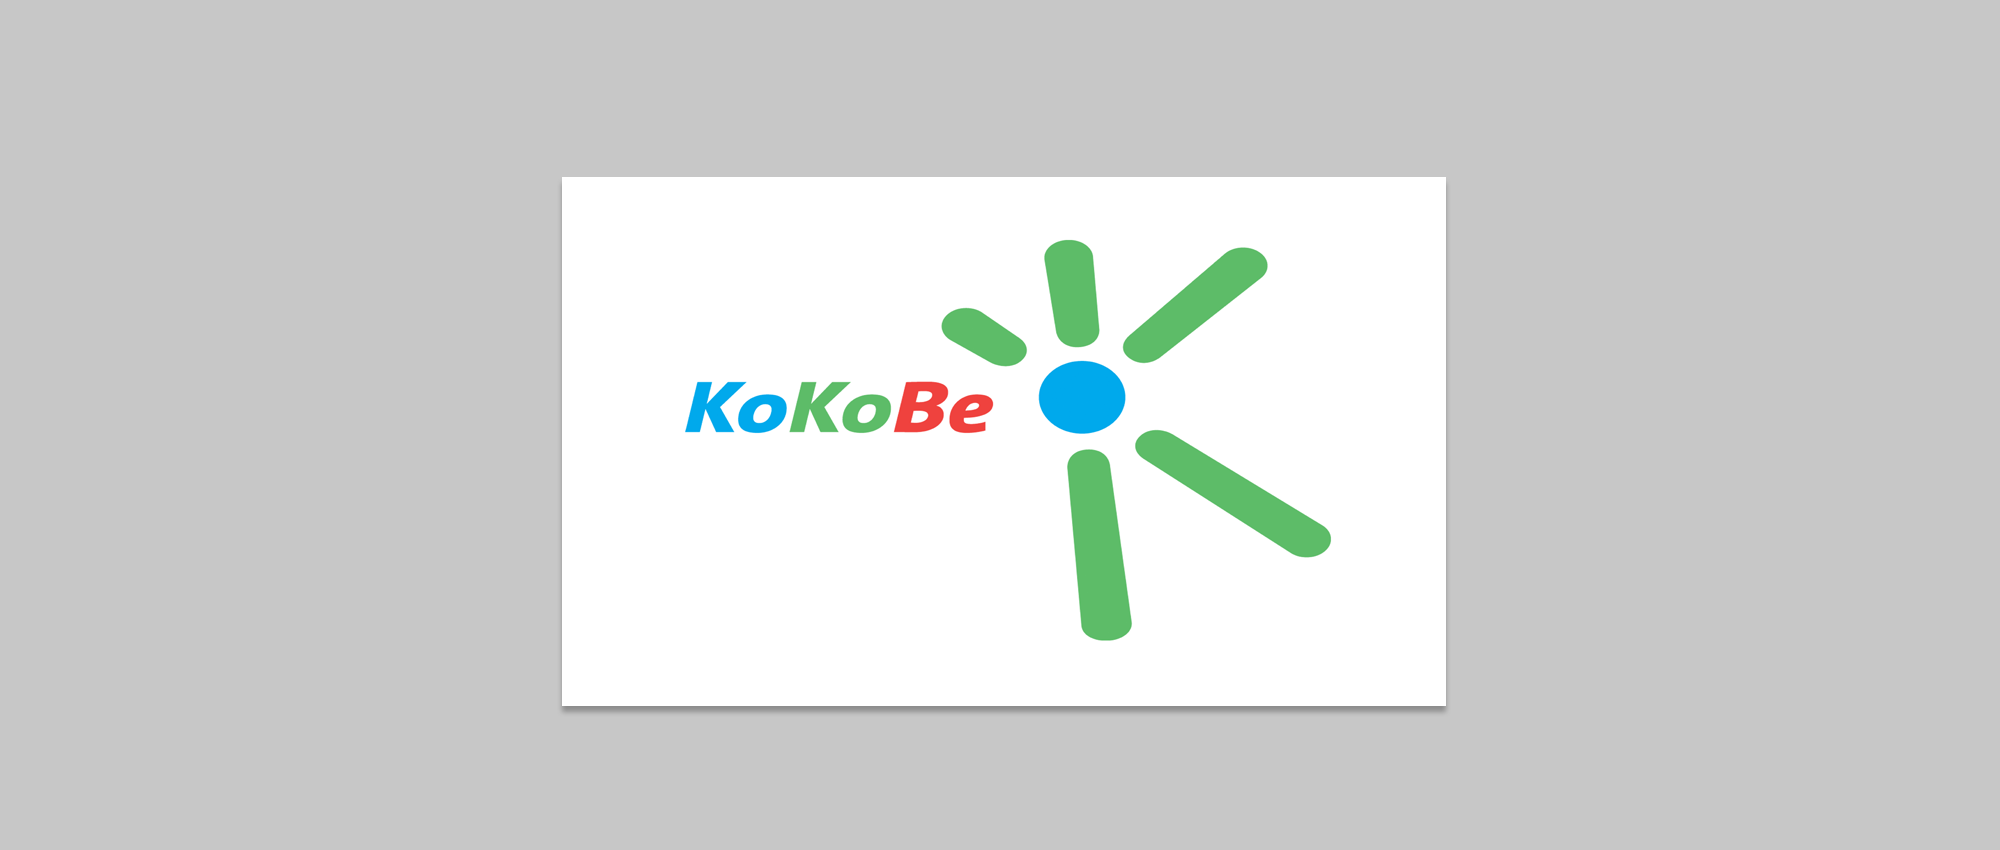 Abbildung des KoKoBe Logos